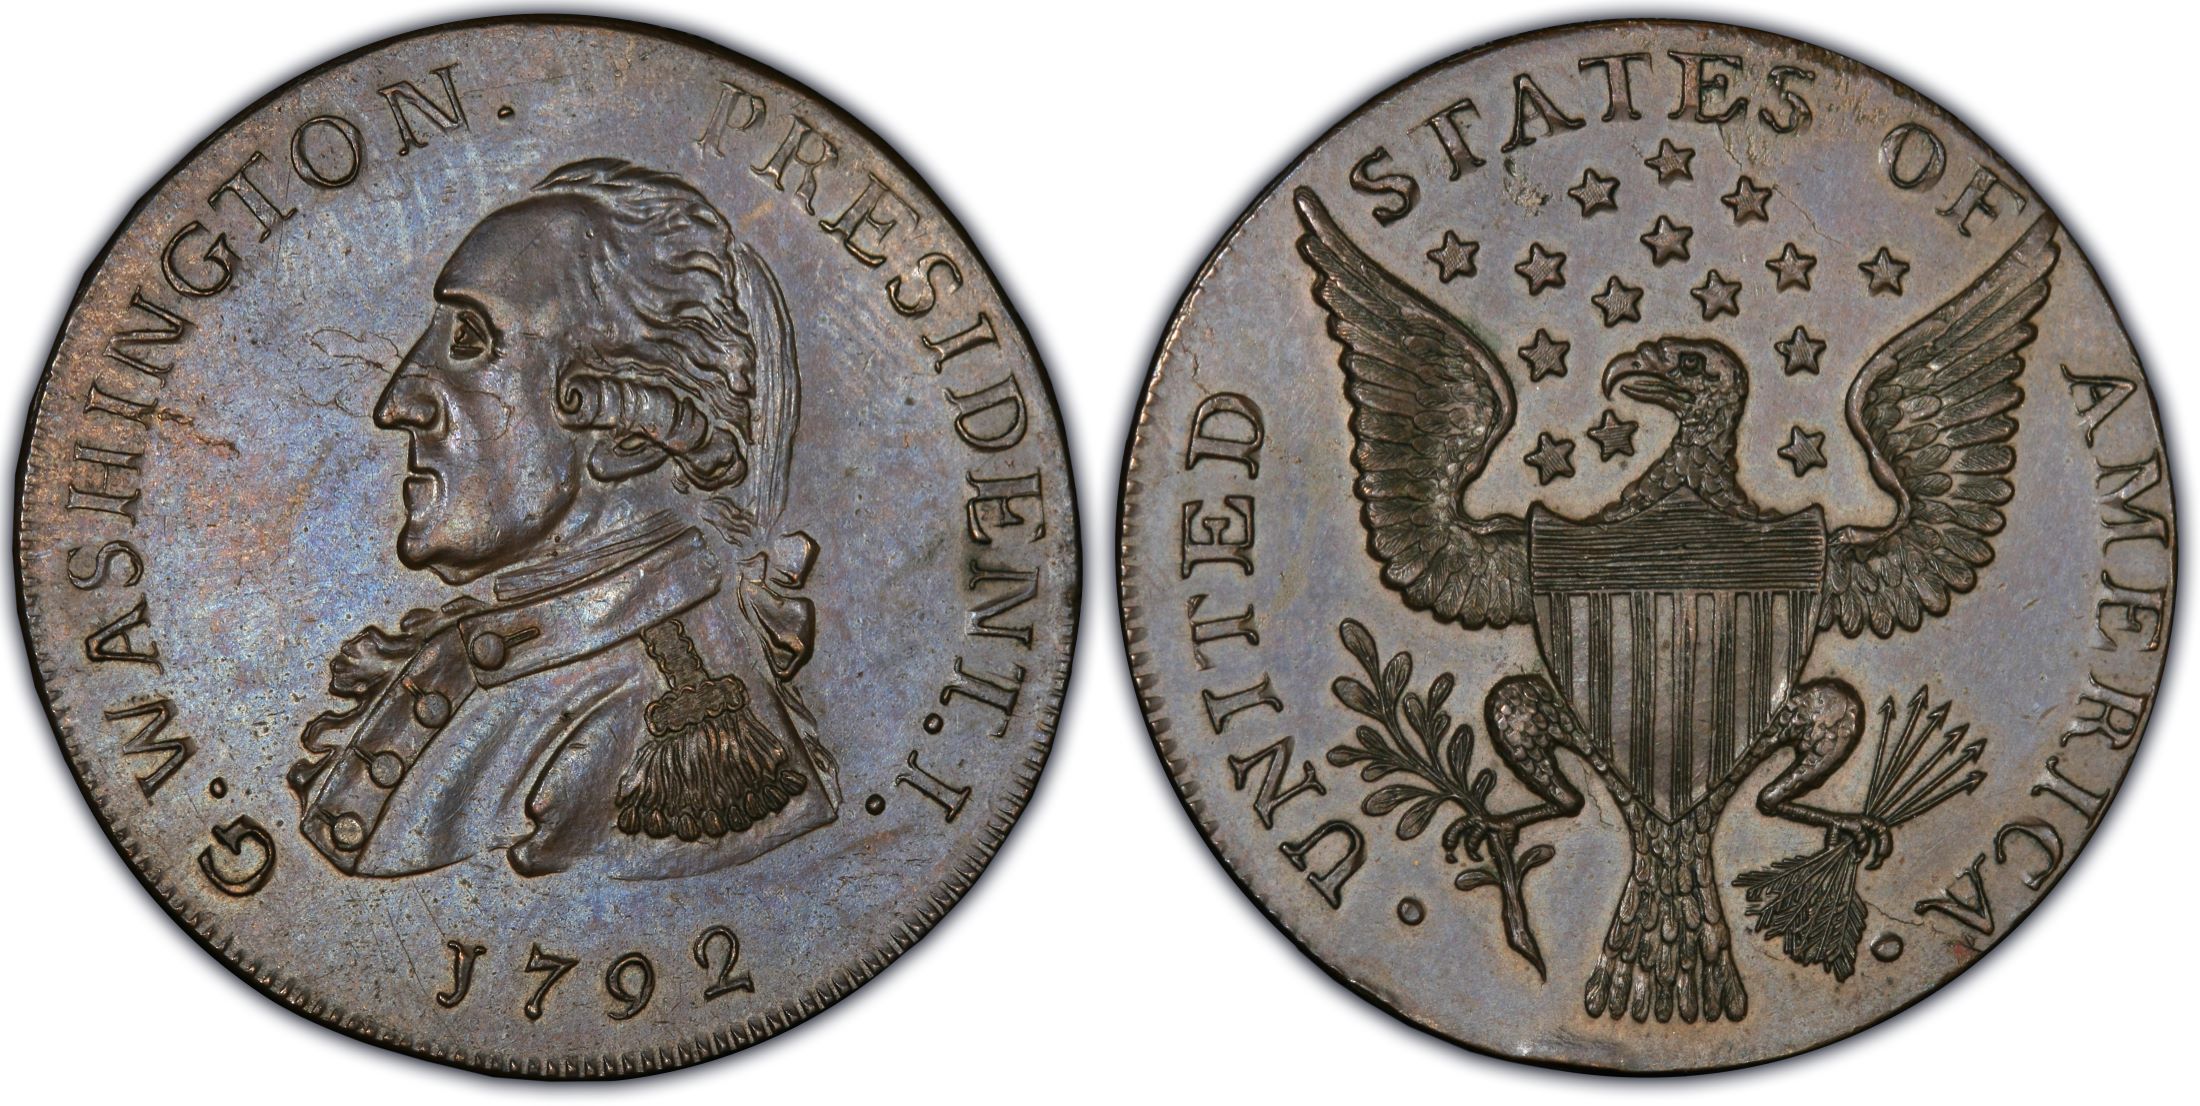 Uno dei centesimi, anche questo rarissimo, inciso da Peter Getz nel 1792 e mai diventato moneta effettiva